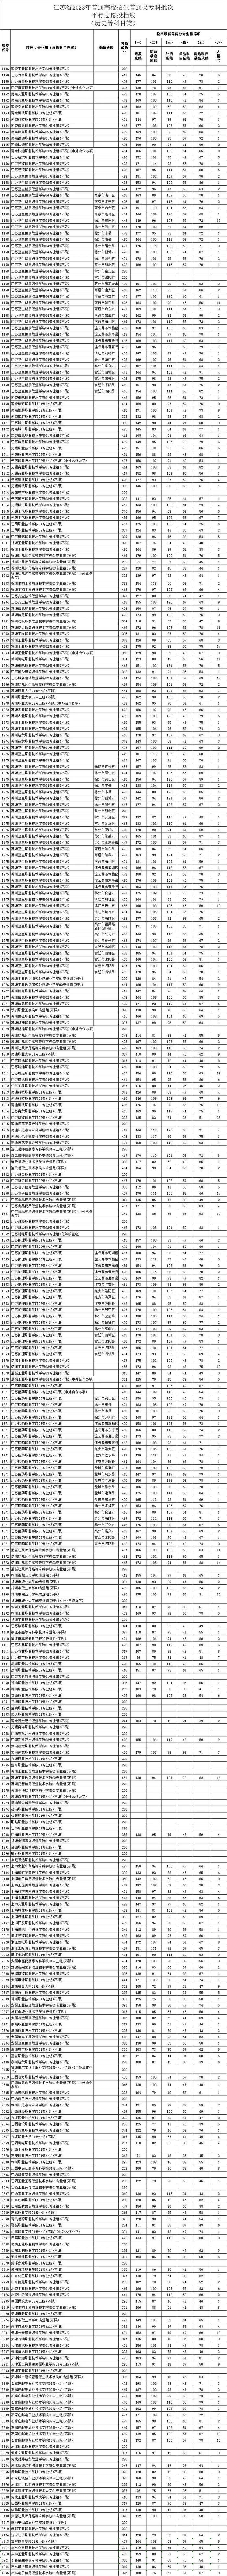 江苏省2023年普通高校招生普通类专科批次平行志愿投档线公布